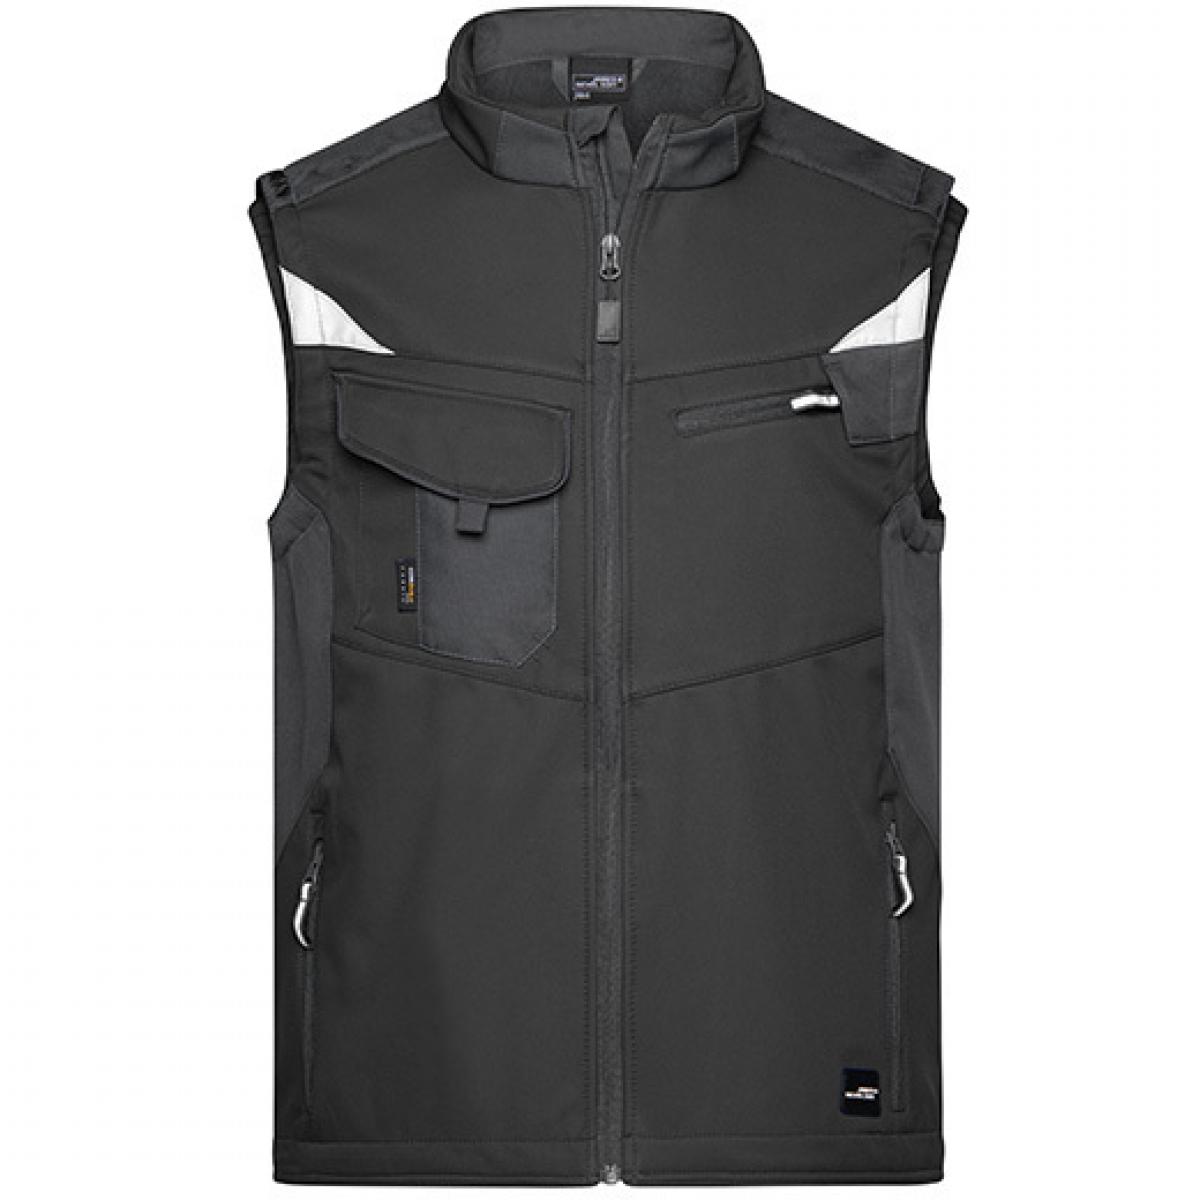 Hersteller: James+Nicholson Herstellernummer: JN845 Artikelbezeichnung: Herren Jacke, Workwear Softshell Vest -STRONG- Farbe: Black/Black